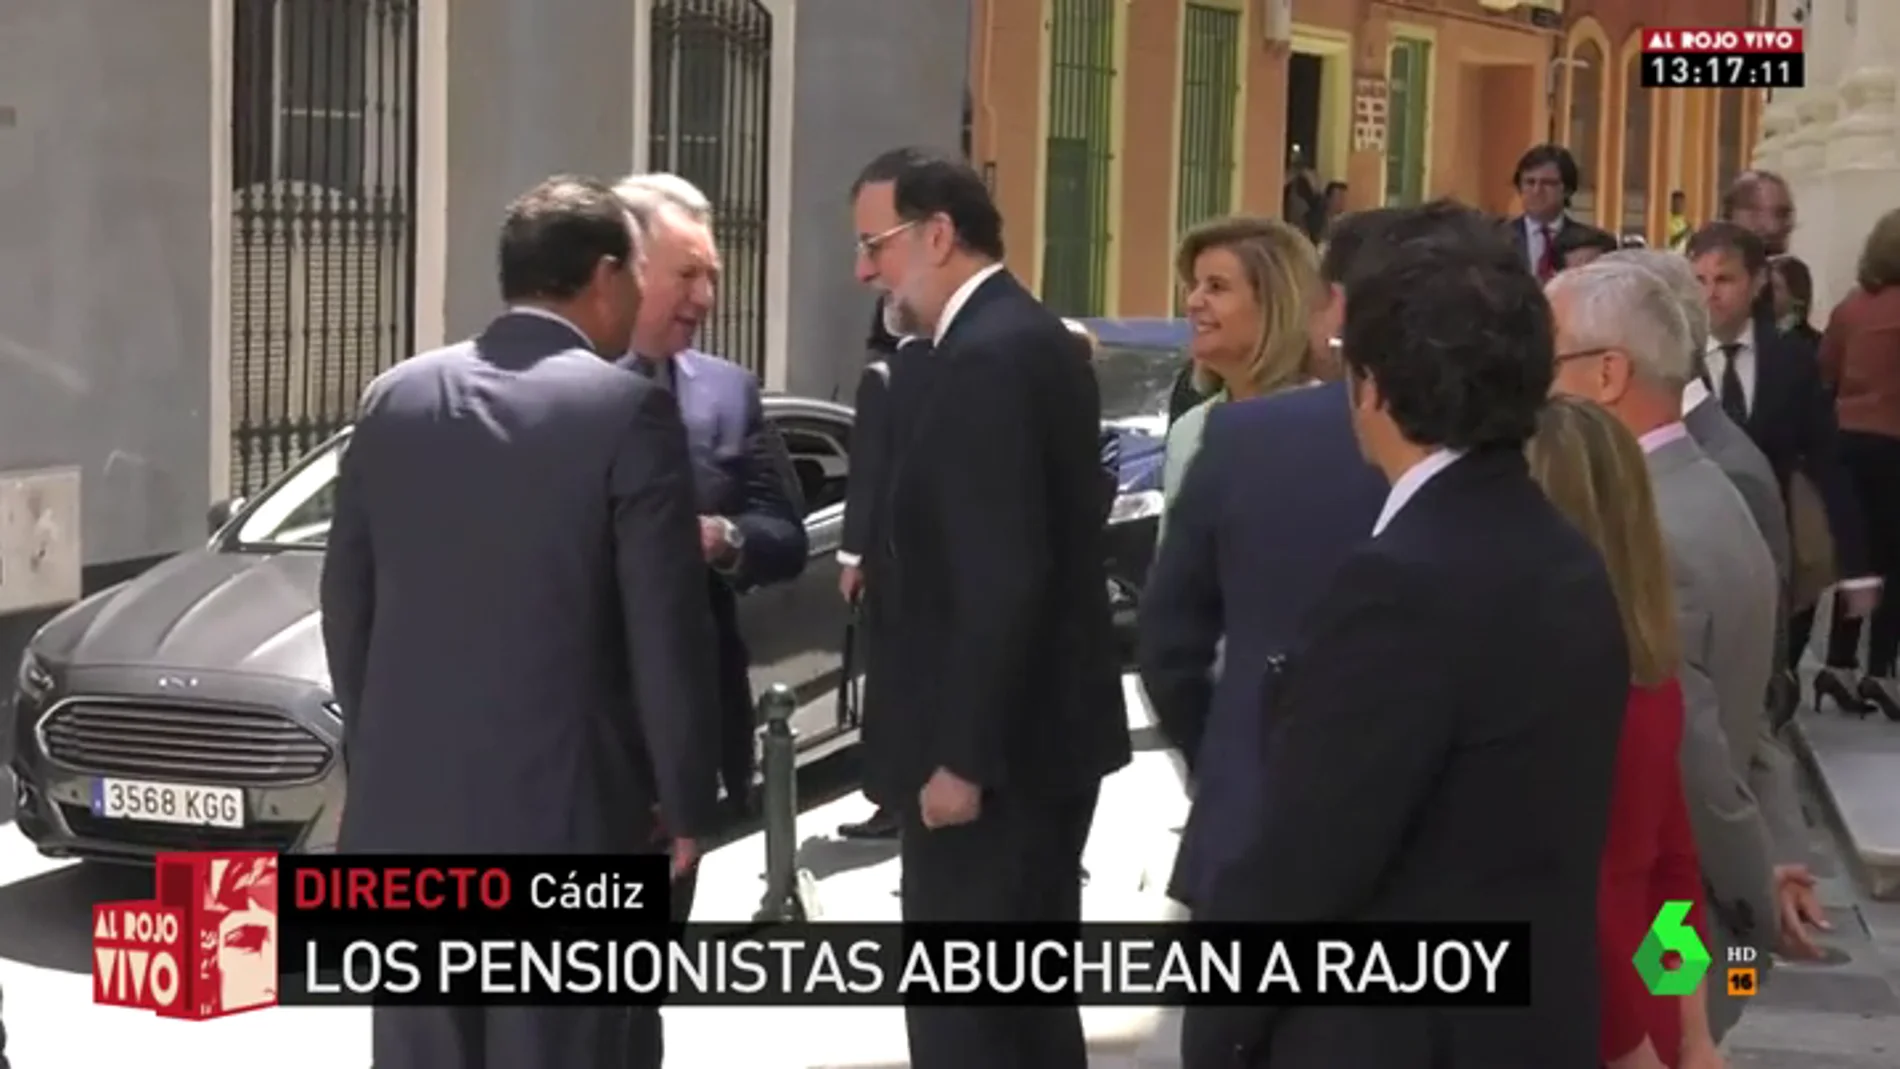 Los pensionistas reciben entre abucheos a Rajoy a su llegada a Cádiz: "Vosotros, fascistas, sois los terroristas"